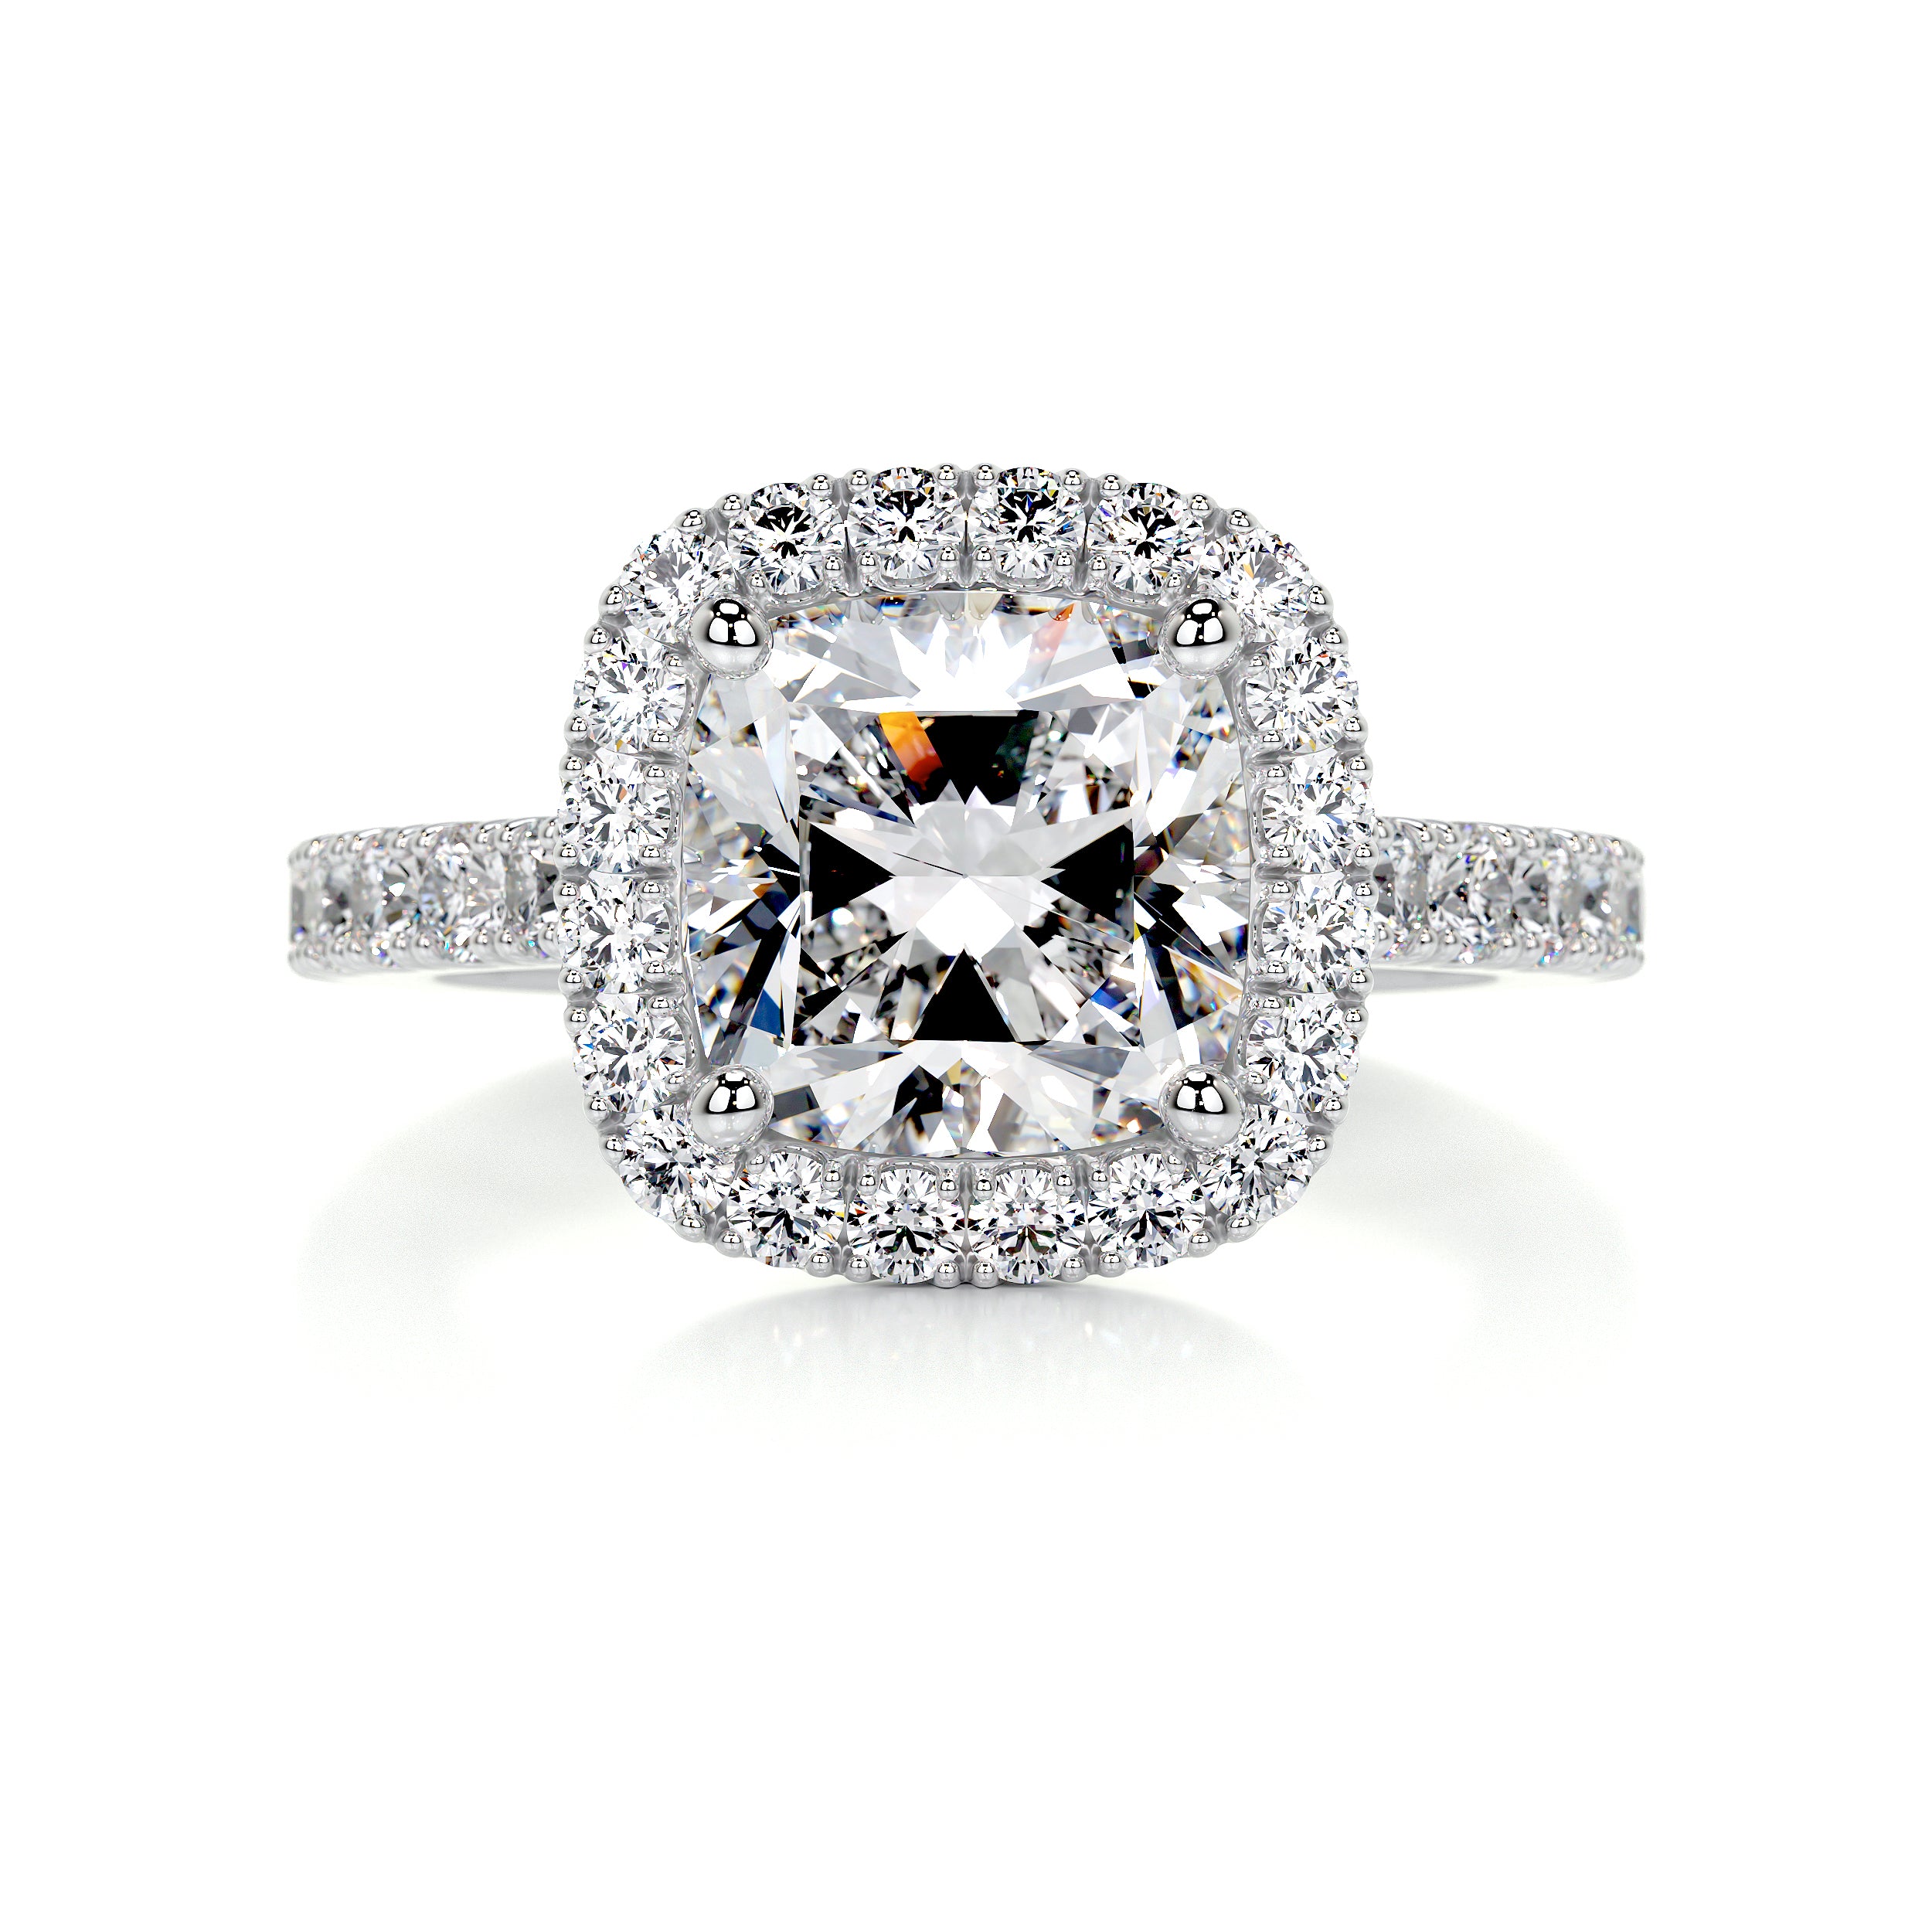 Celeste Moissanite & Diamonds Ring -14K White Gold